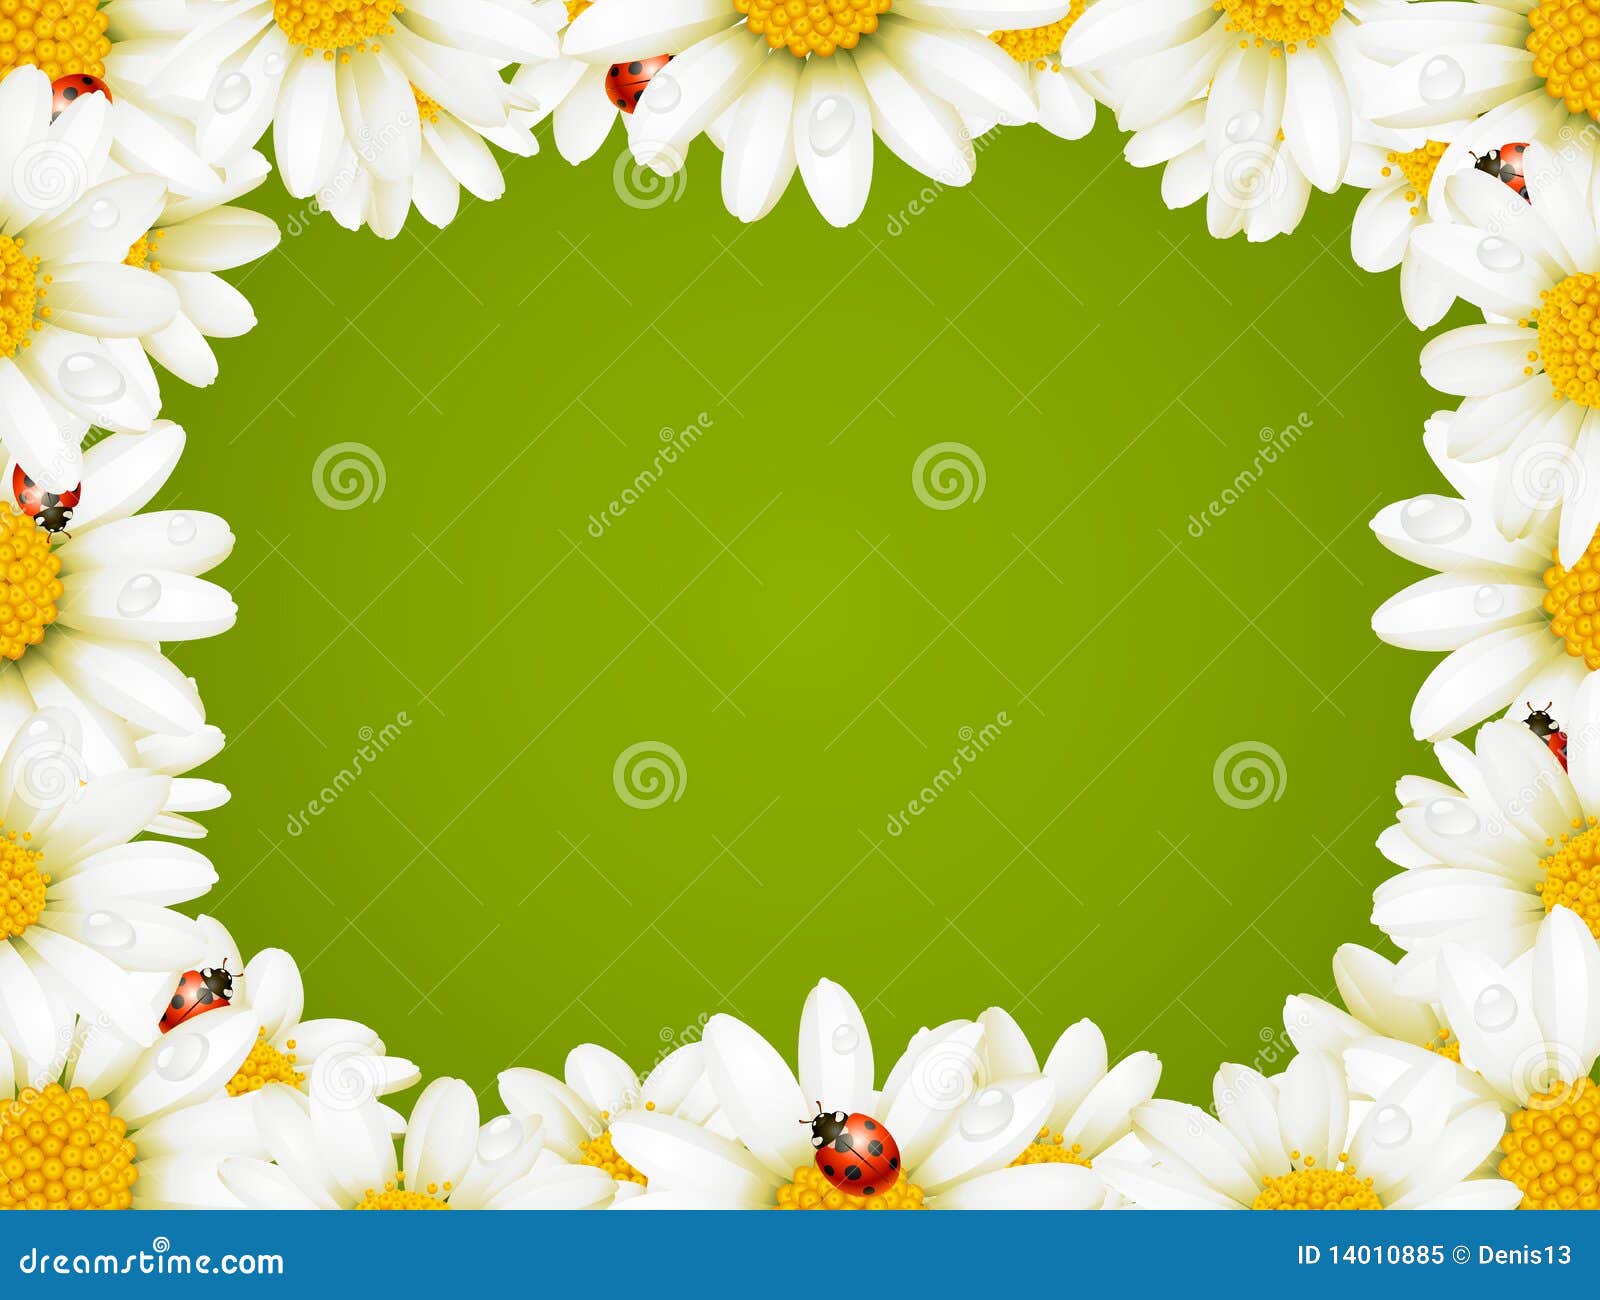 camomile floral frame